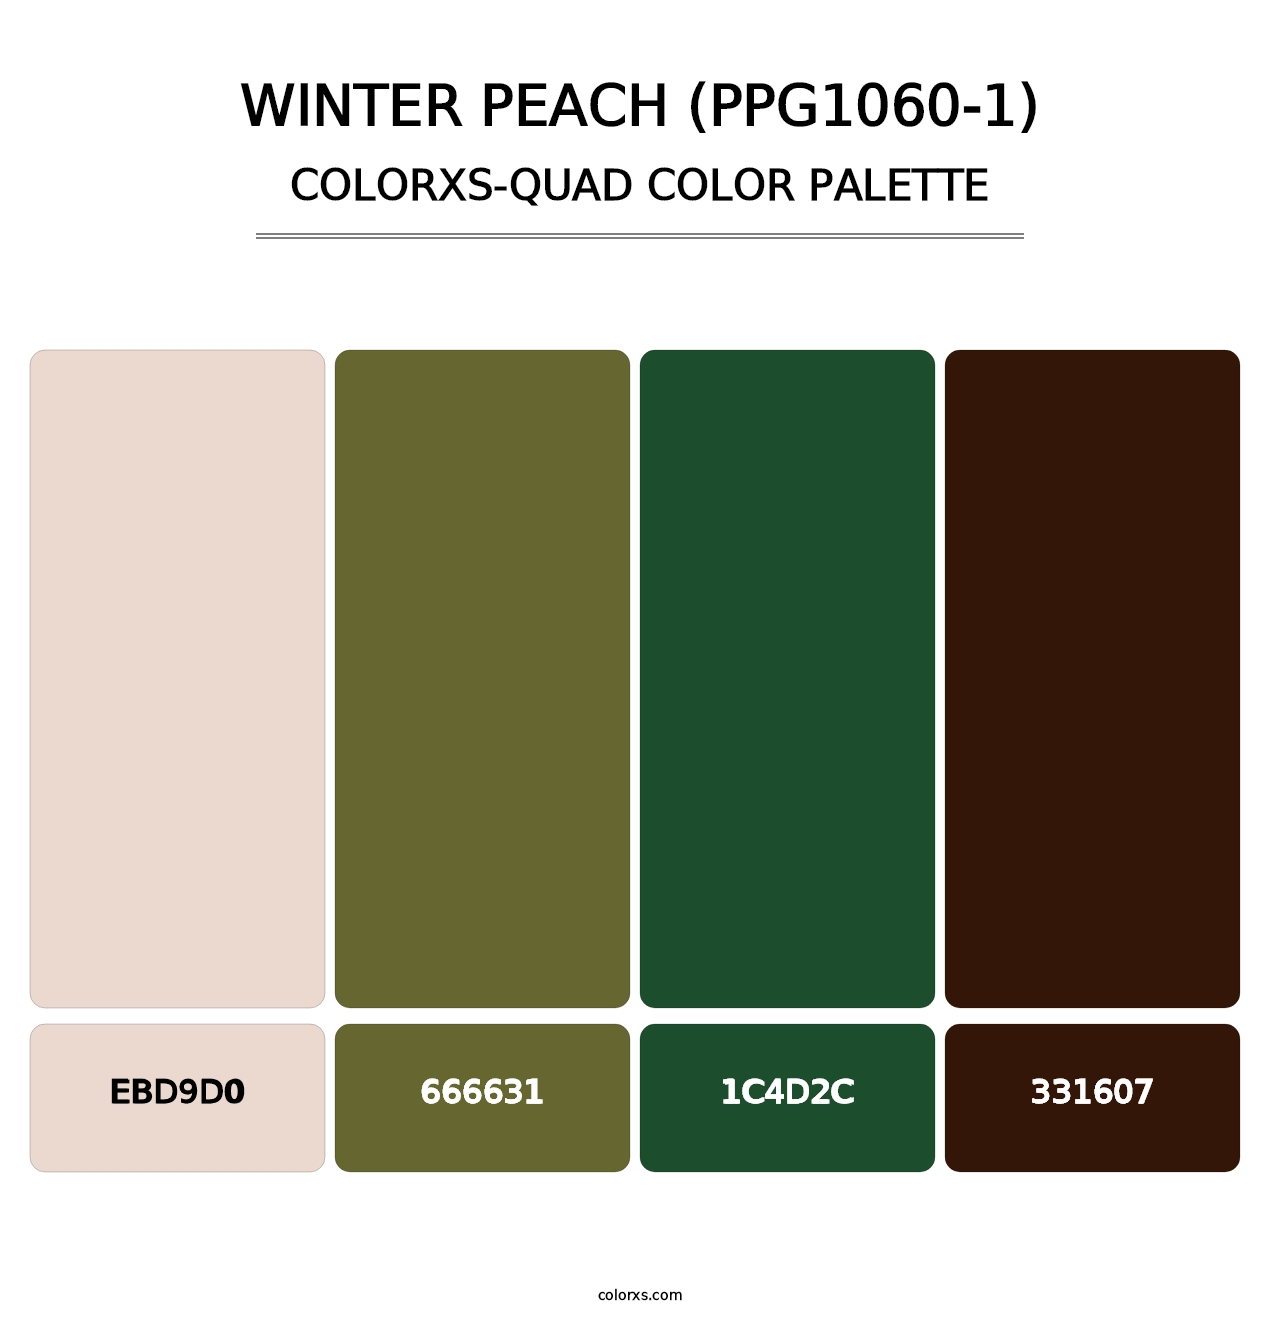 Winter Peach (PPG1060-1) - Colorxs Quad Palette